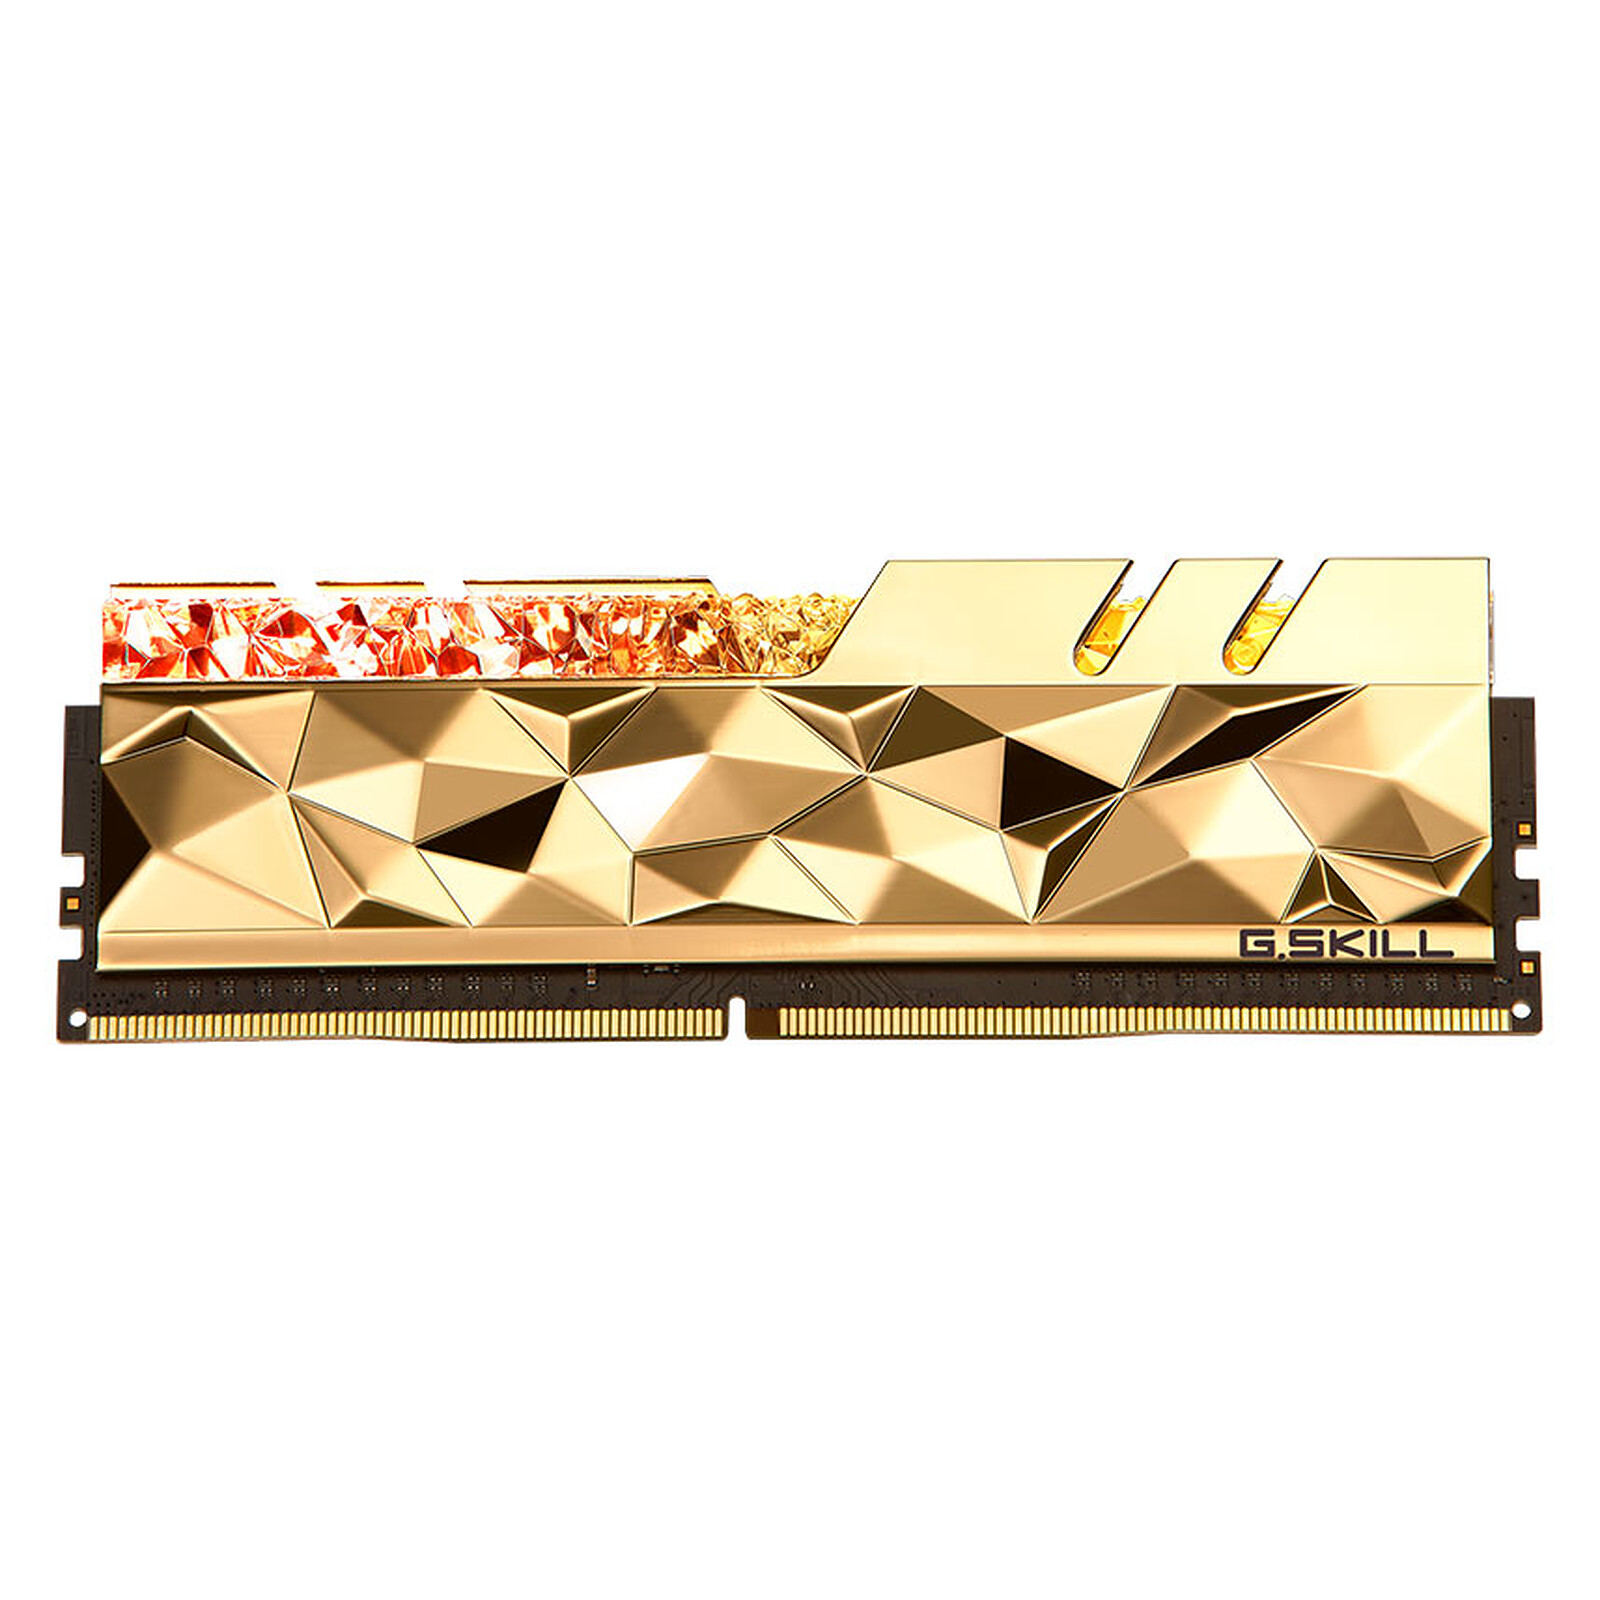 Achetez votre G.Skill Trident Z Royal 32 Go (4x8Go) DDR4 3600 MHz CL14 - Or  au meilleur prix du web – Rue Montgallet